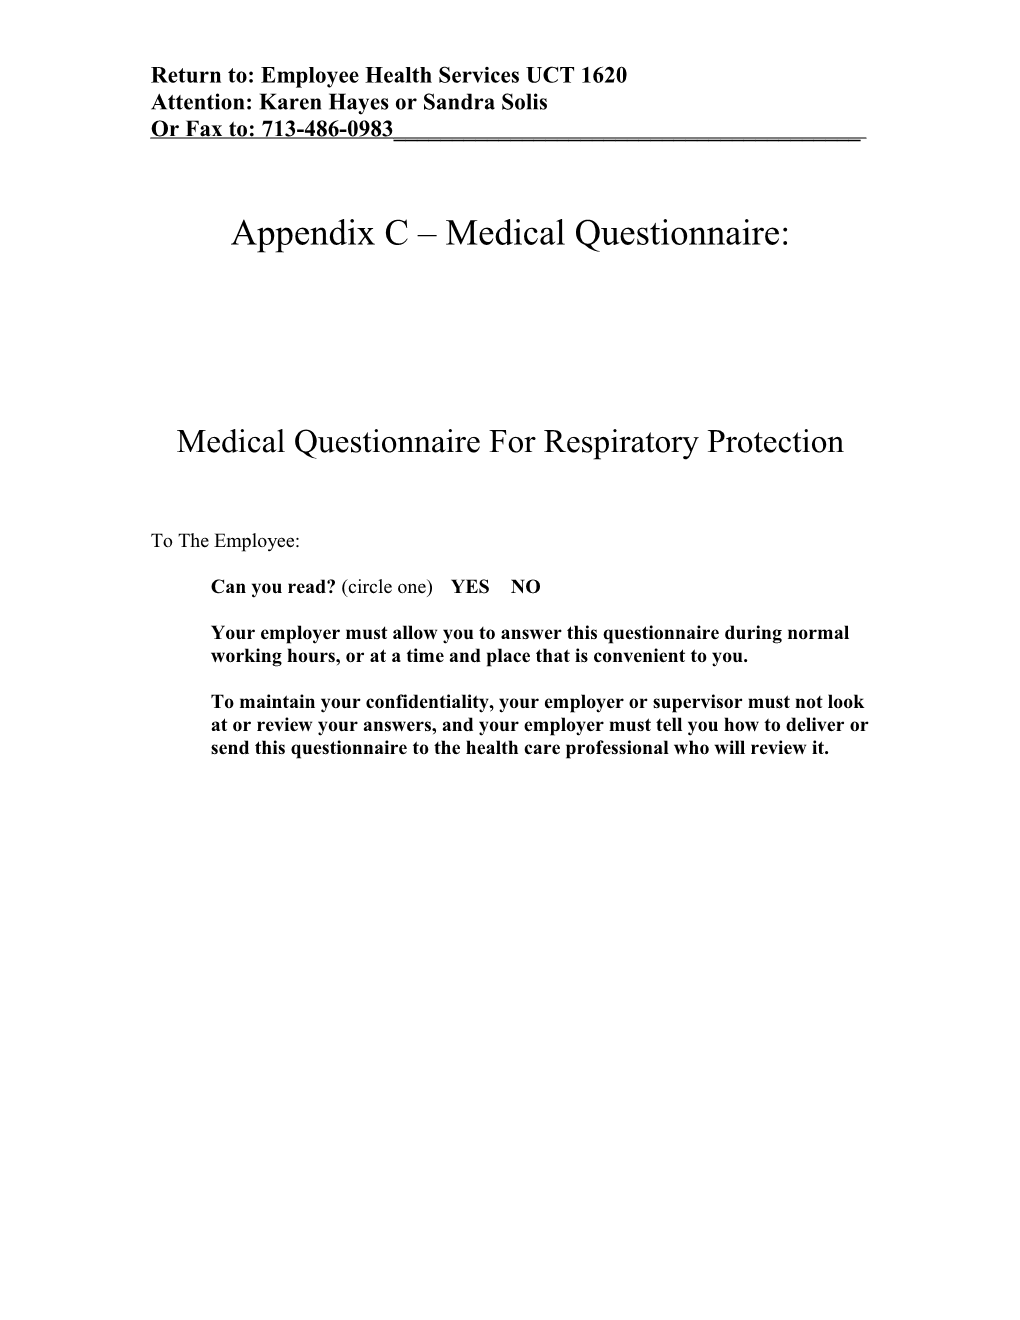 Appendix a Medical Questionnaire